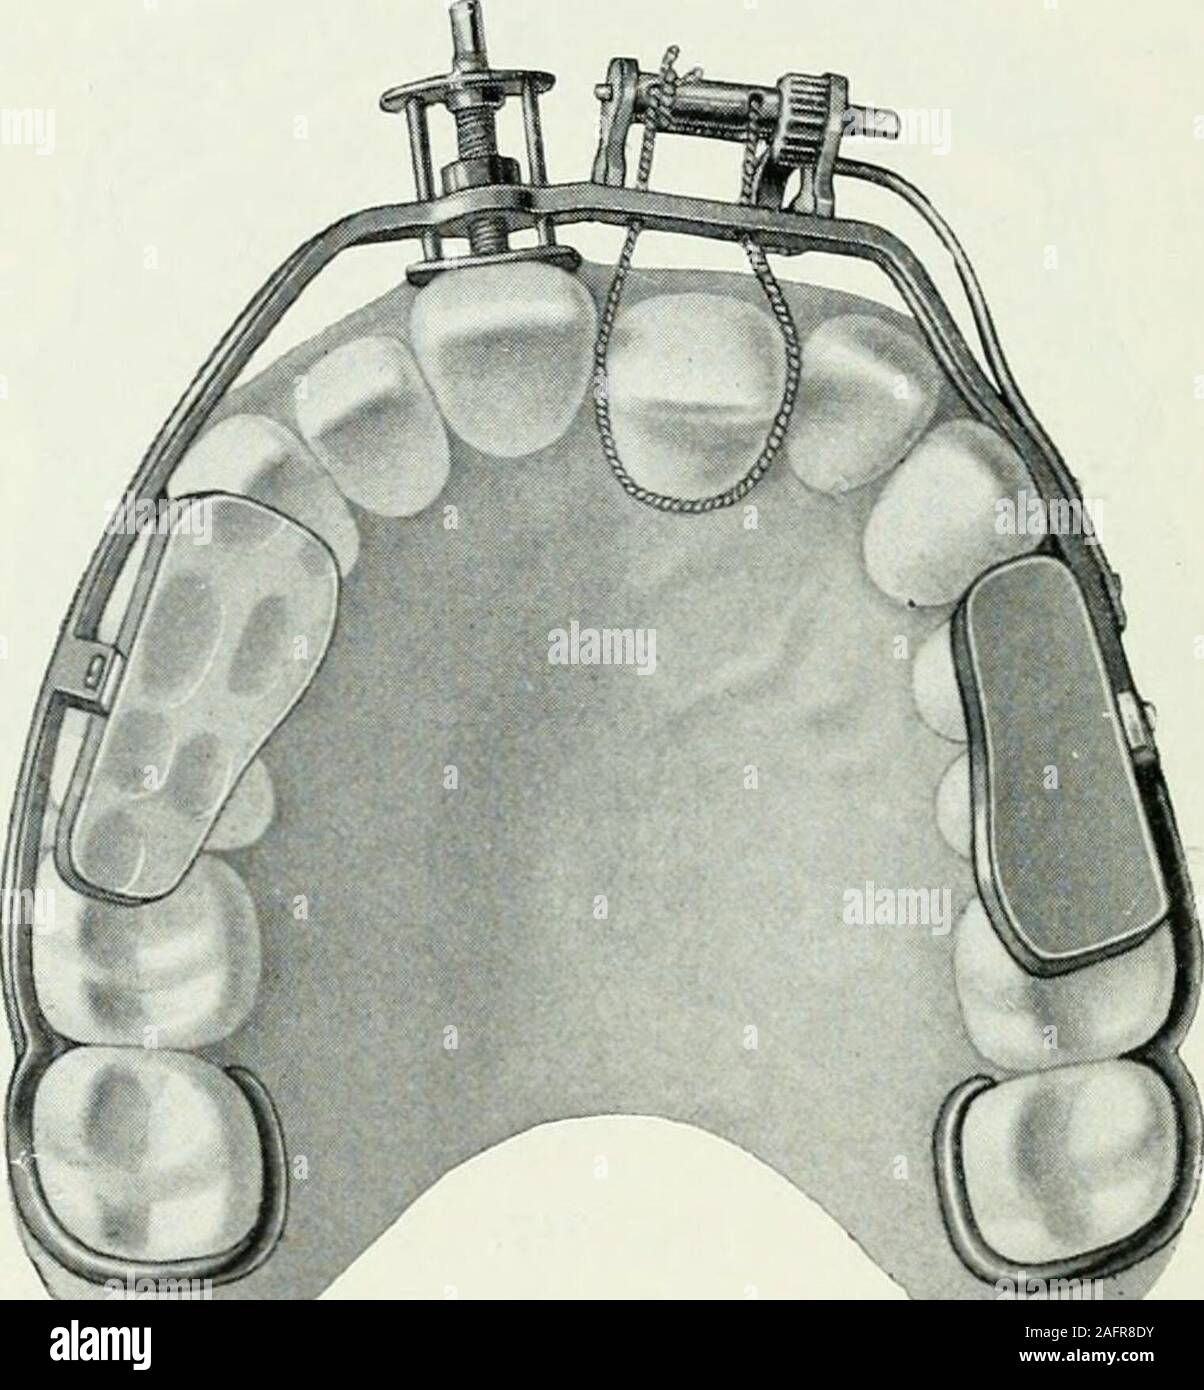 . Lehrbuch der orthodontie fur studierende und zahnartze mit enschluss der geschichte der orthodontie. ibung in der gewünschten Lage festgehalten. Bißer-höhung wird erreicht durch Elfenbeinklötzchen, che auf denZahnkronen liegen and durch einen Metallbügel an dem labialenBogen festgenietet sind. Der Franzose Marmont :r) (1844) nahm für sich die Priori-tät der Kieferdehnung in Anspruch. Bei Schiefstand des Augen- :;:) L. V. 60.Pf äff, Orthodontie. 21 322 Geschichte der Orthodontie. zahnes riet er, den ersten Mahlzahn, sofern er krank wäre, zuentfernen und die beiden Prämolaren nach rückwärts zu Stock Photo